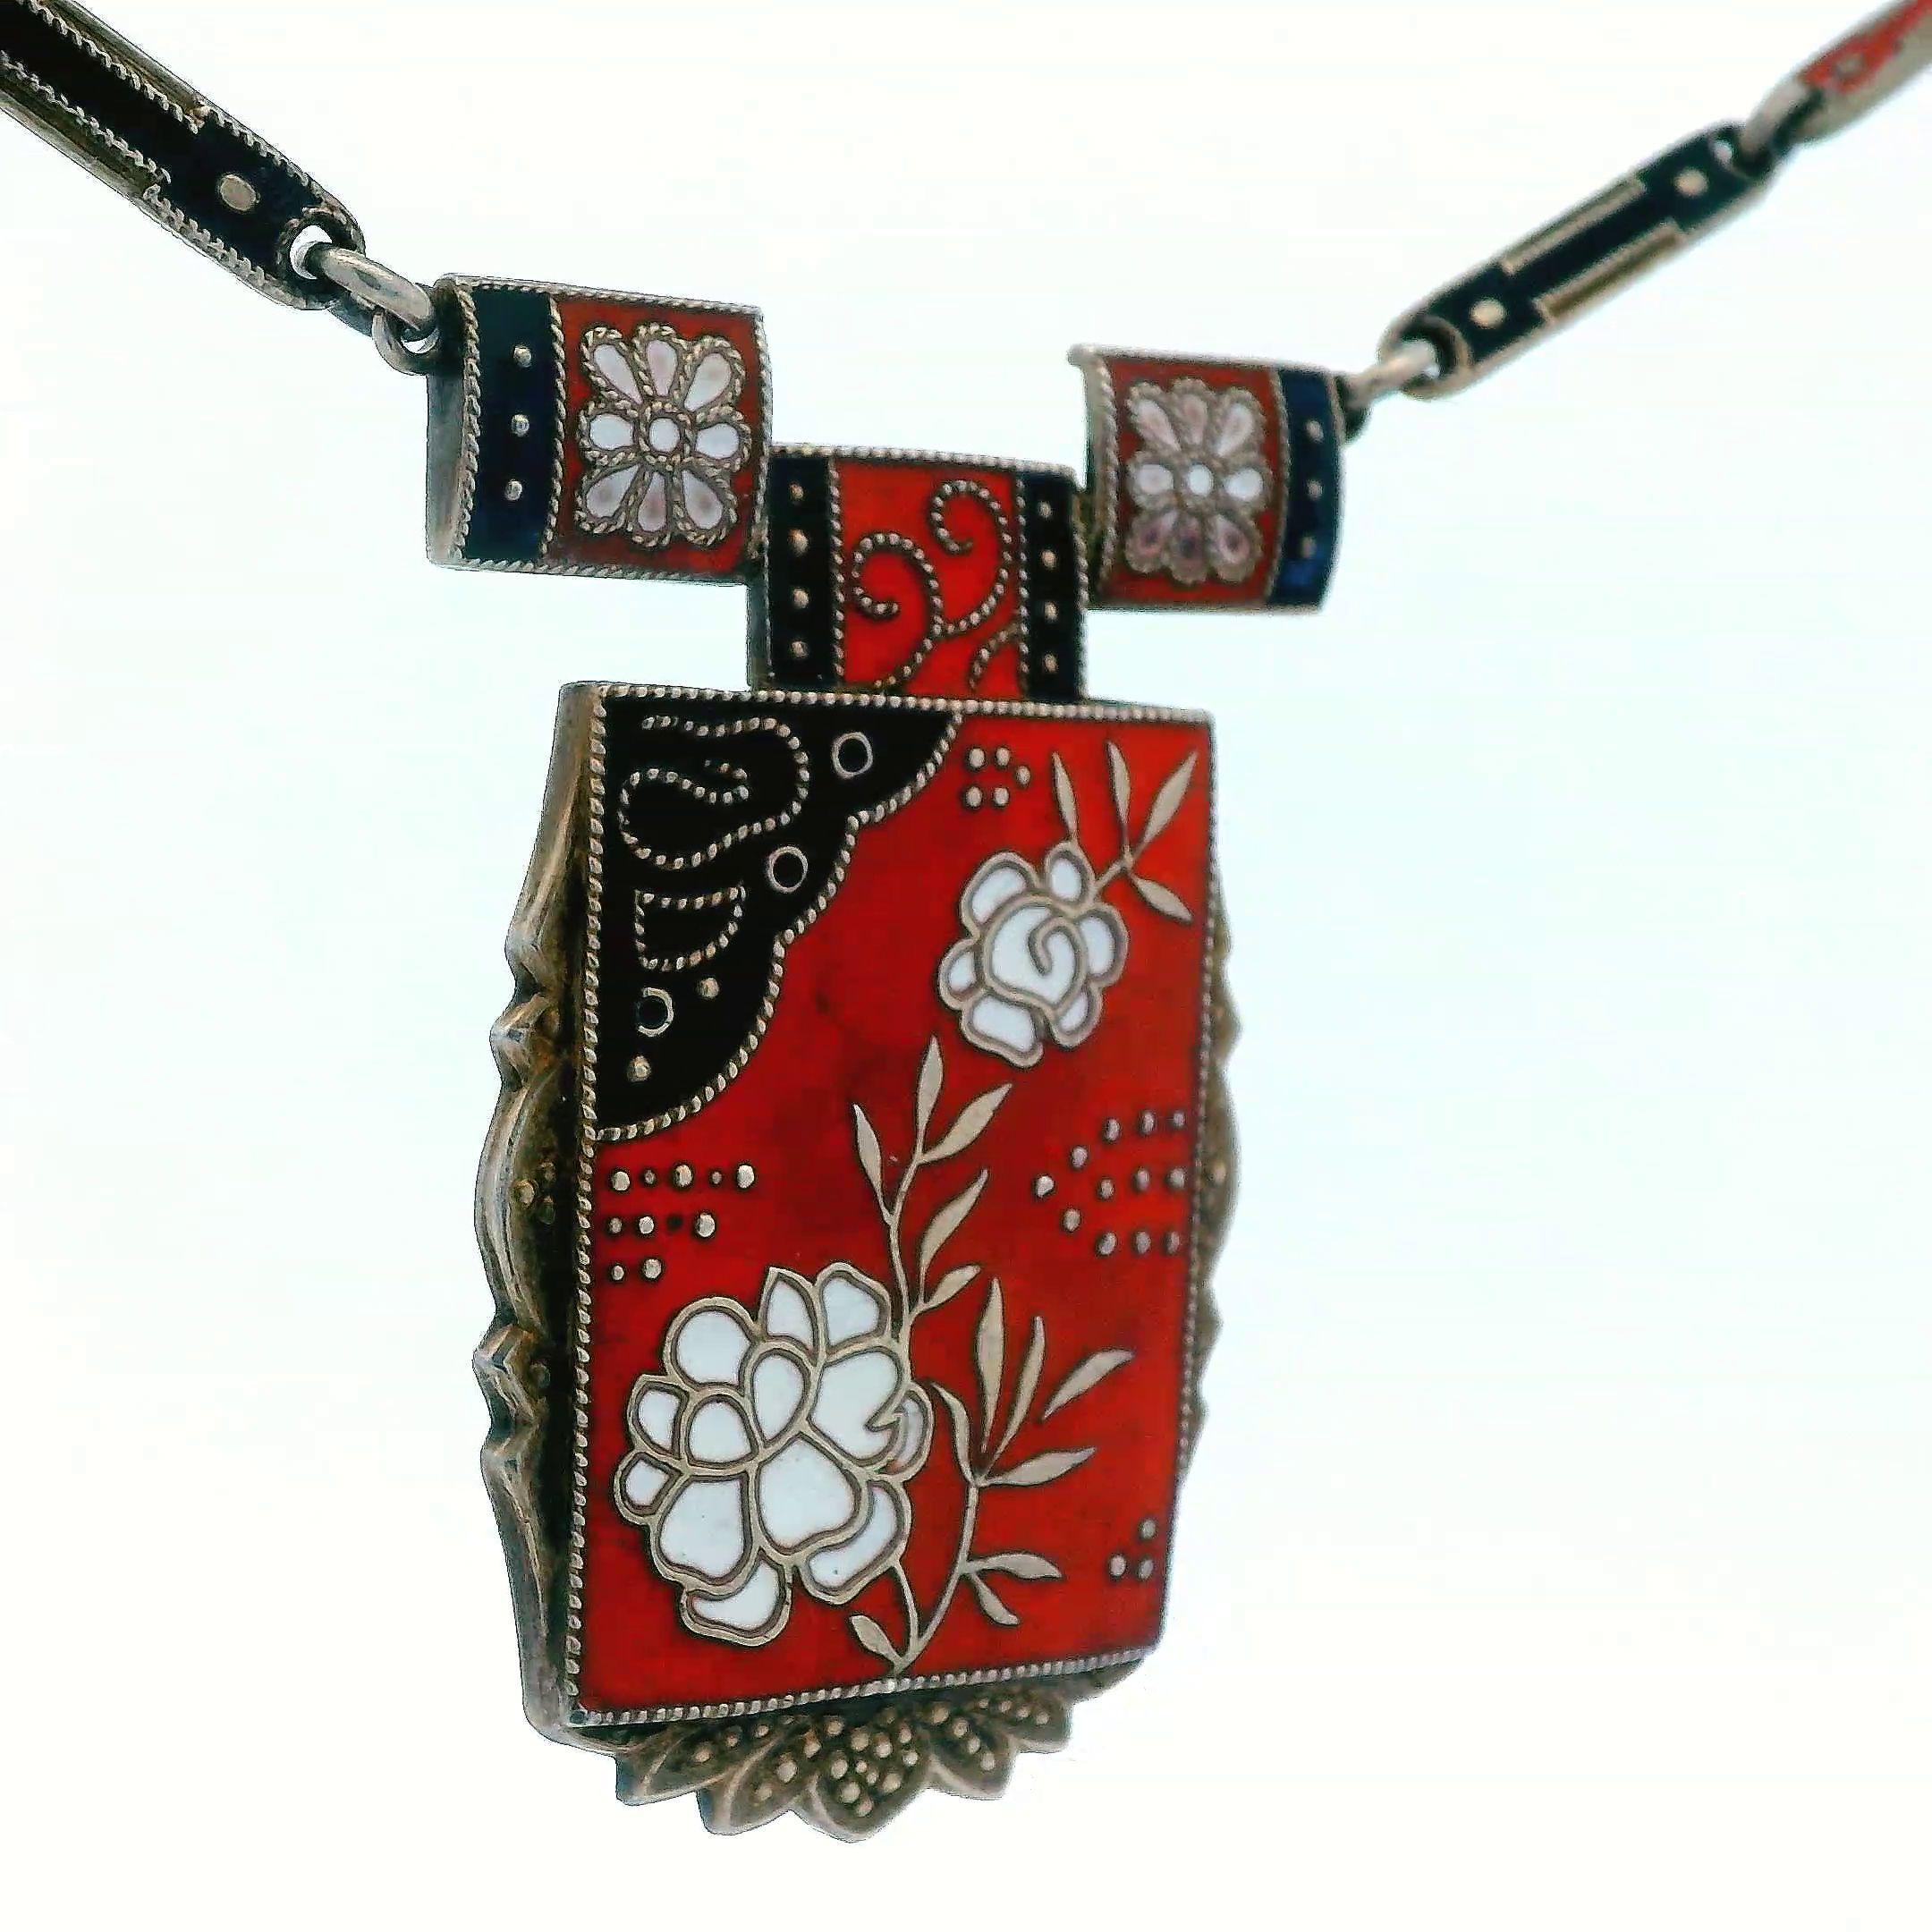 Diese schöne Halskette stammt aus dem Jahr 1910 und ist aus Sterlingsilber mit roter, schwarzer und weißer Emaille gefertigt. Das Besondere an dieser Halskette sind die detailreichen Blumenporträts, die durch die prächtigen Emaillefarben möglich